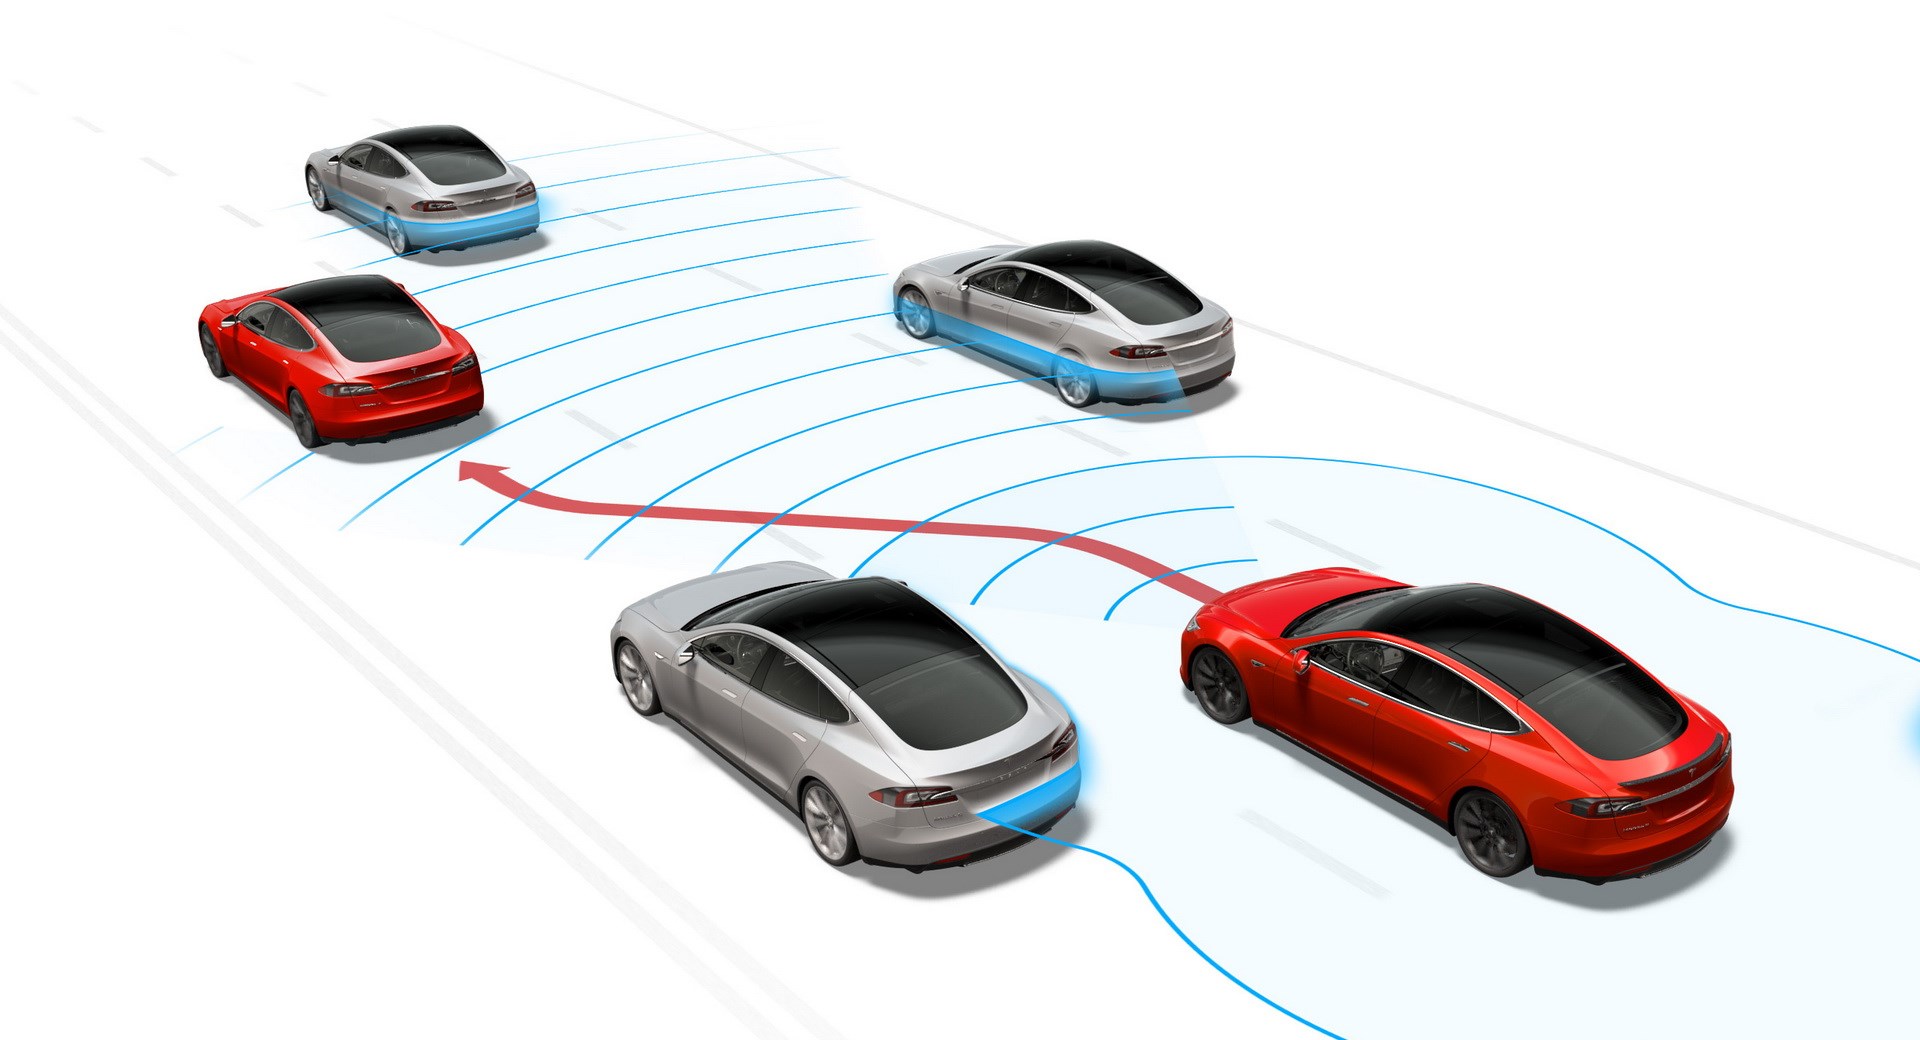 Tesla'nın Autopilot sistemi artık radarsız çalışacak